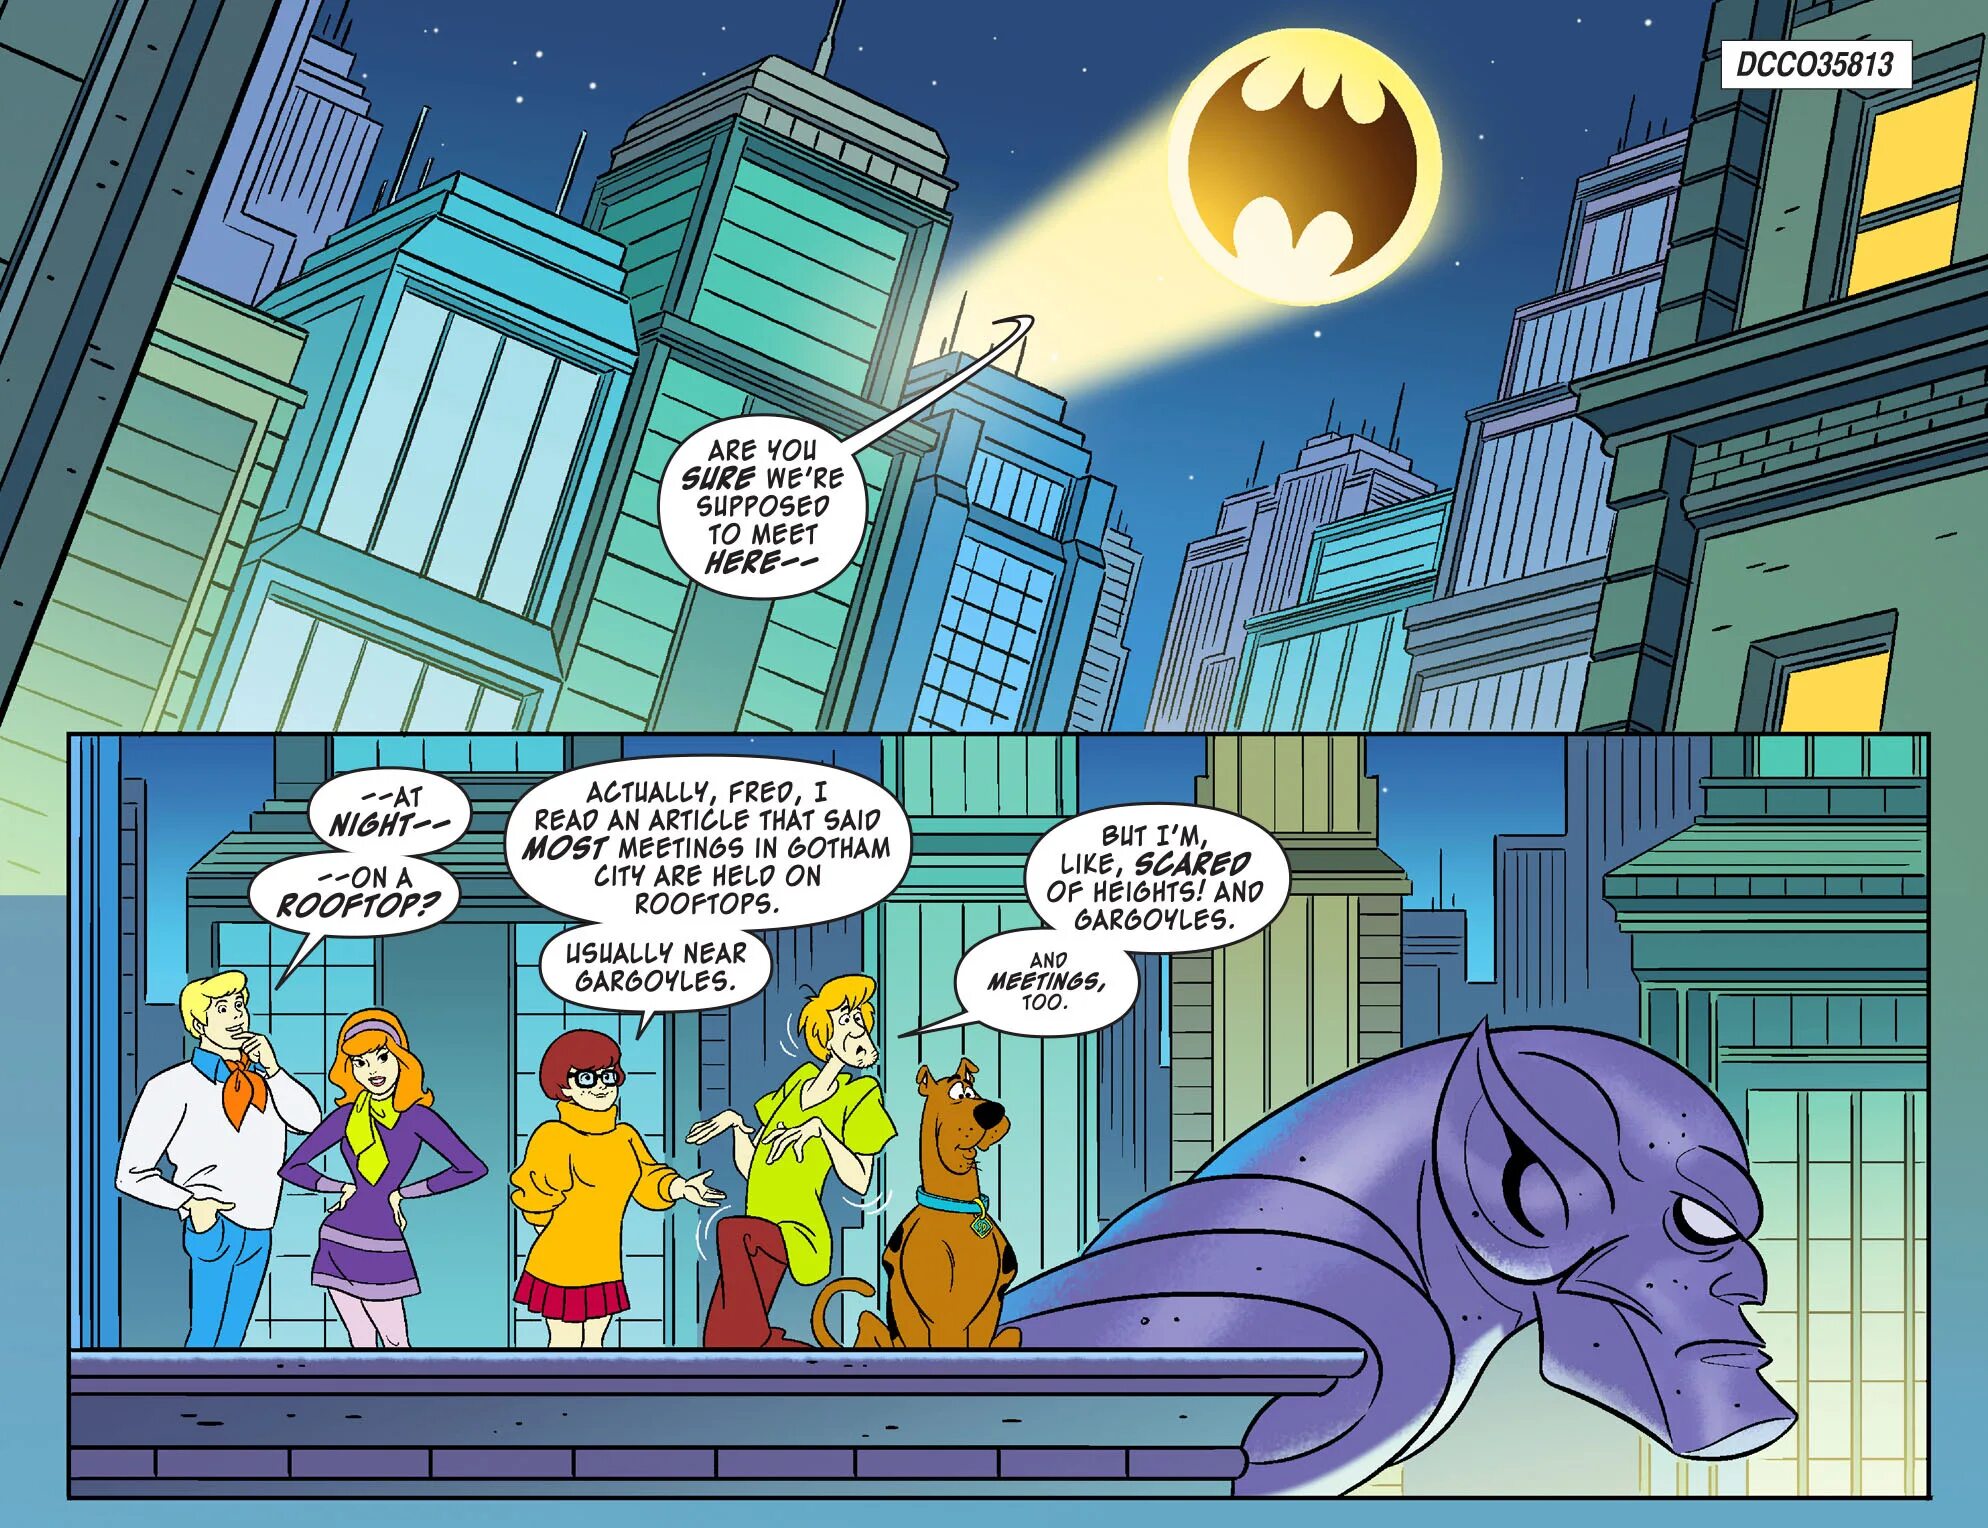 Комикс Скуби Ду. Скуби Ду Team up. Скуби изменяет вселенную. Бэтмен во Вселенной Скуби Ду. Team up часть 2